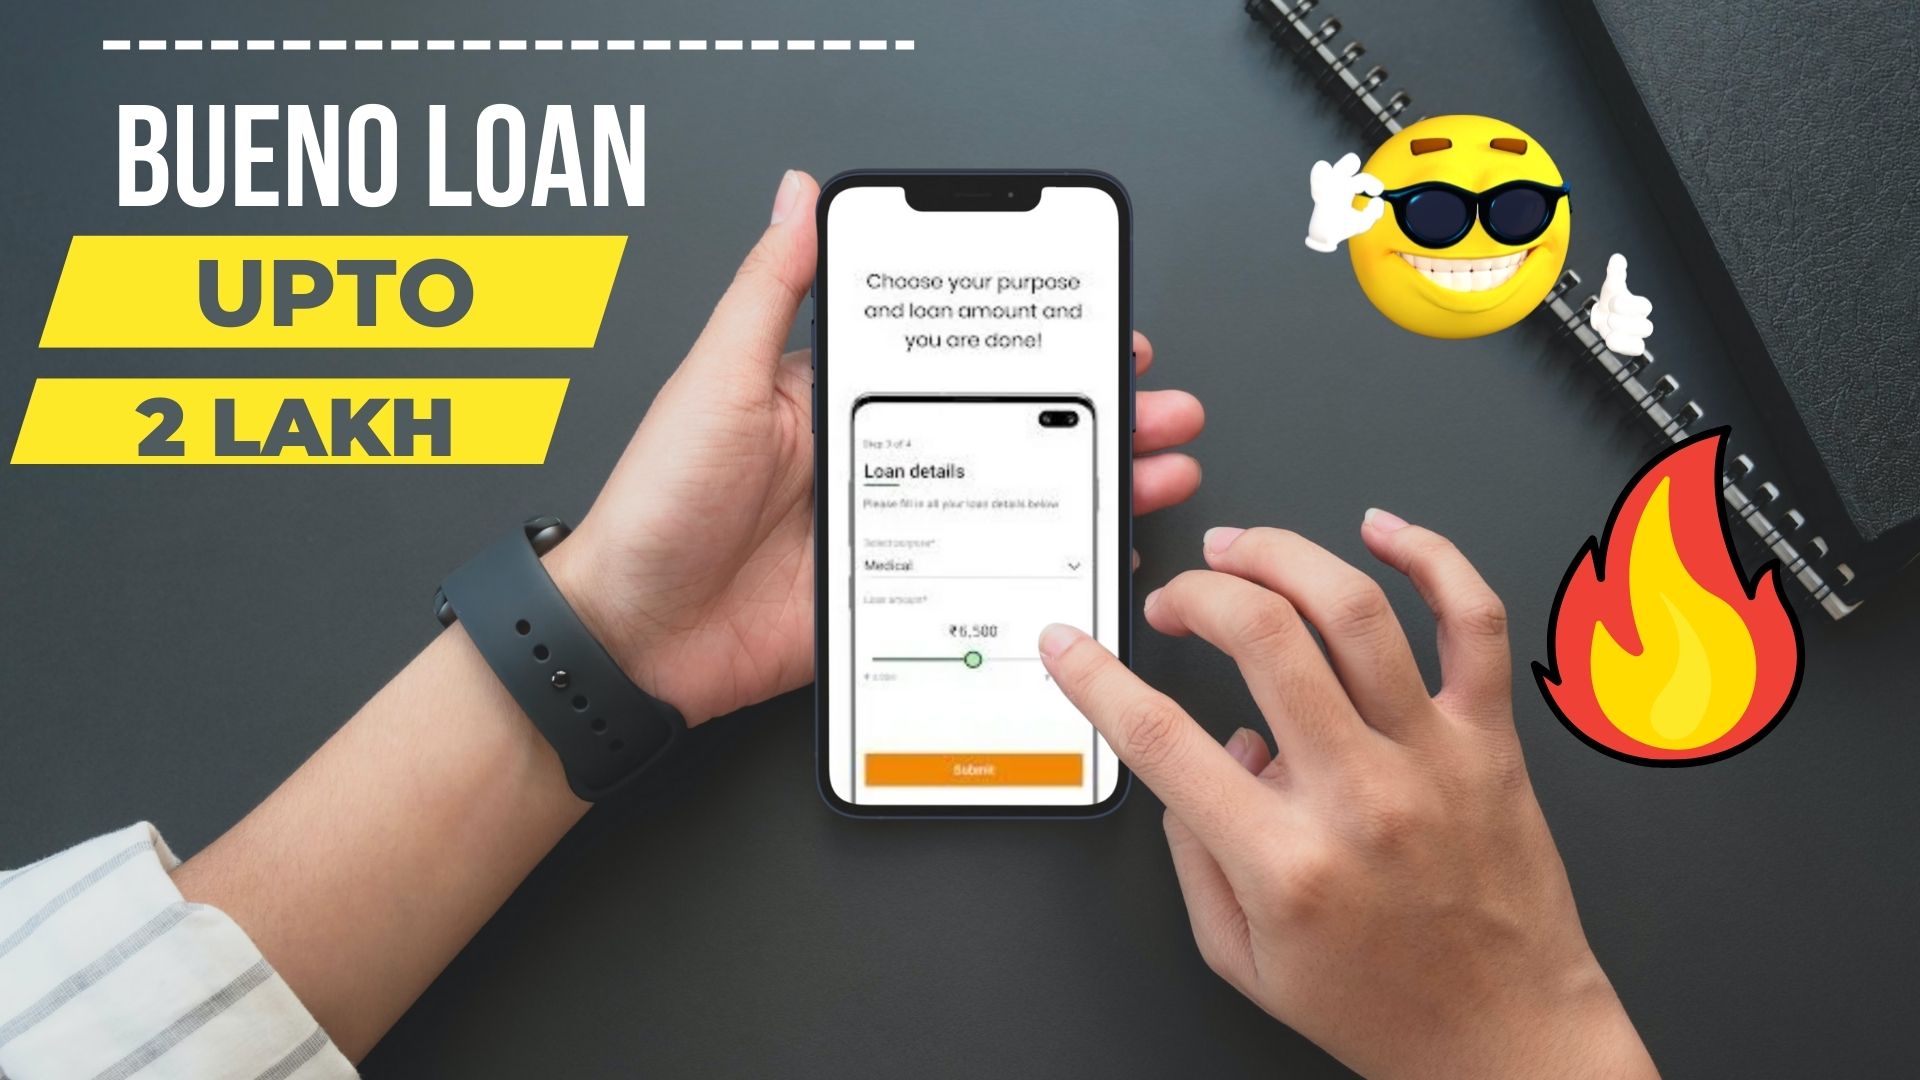 Bueno Loan App | How To Apply Online Loan From Bueno Loan App